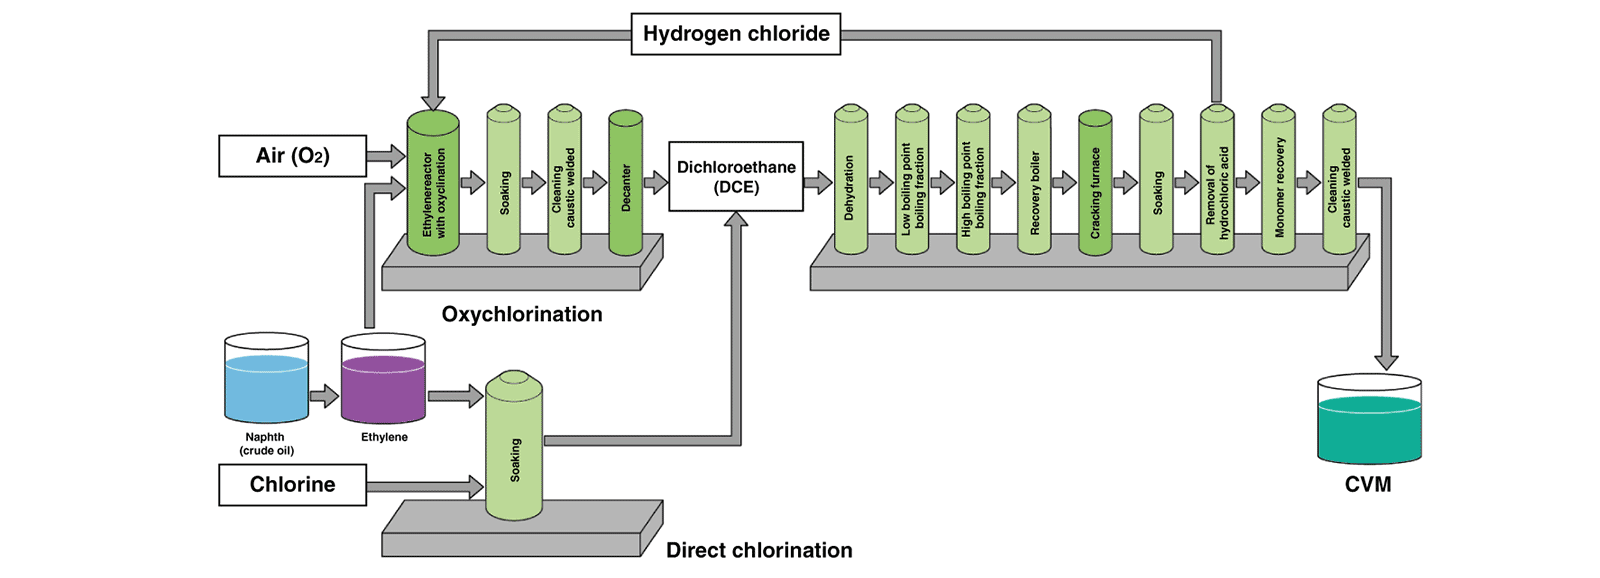 Producción de cloruro de vinilo monómero cvm